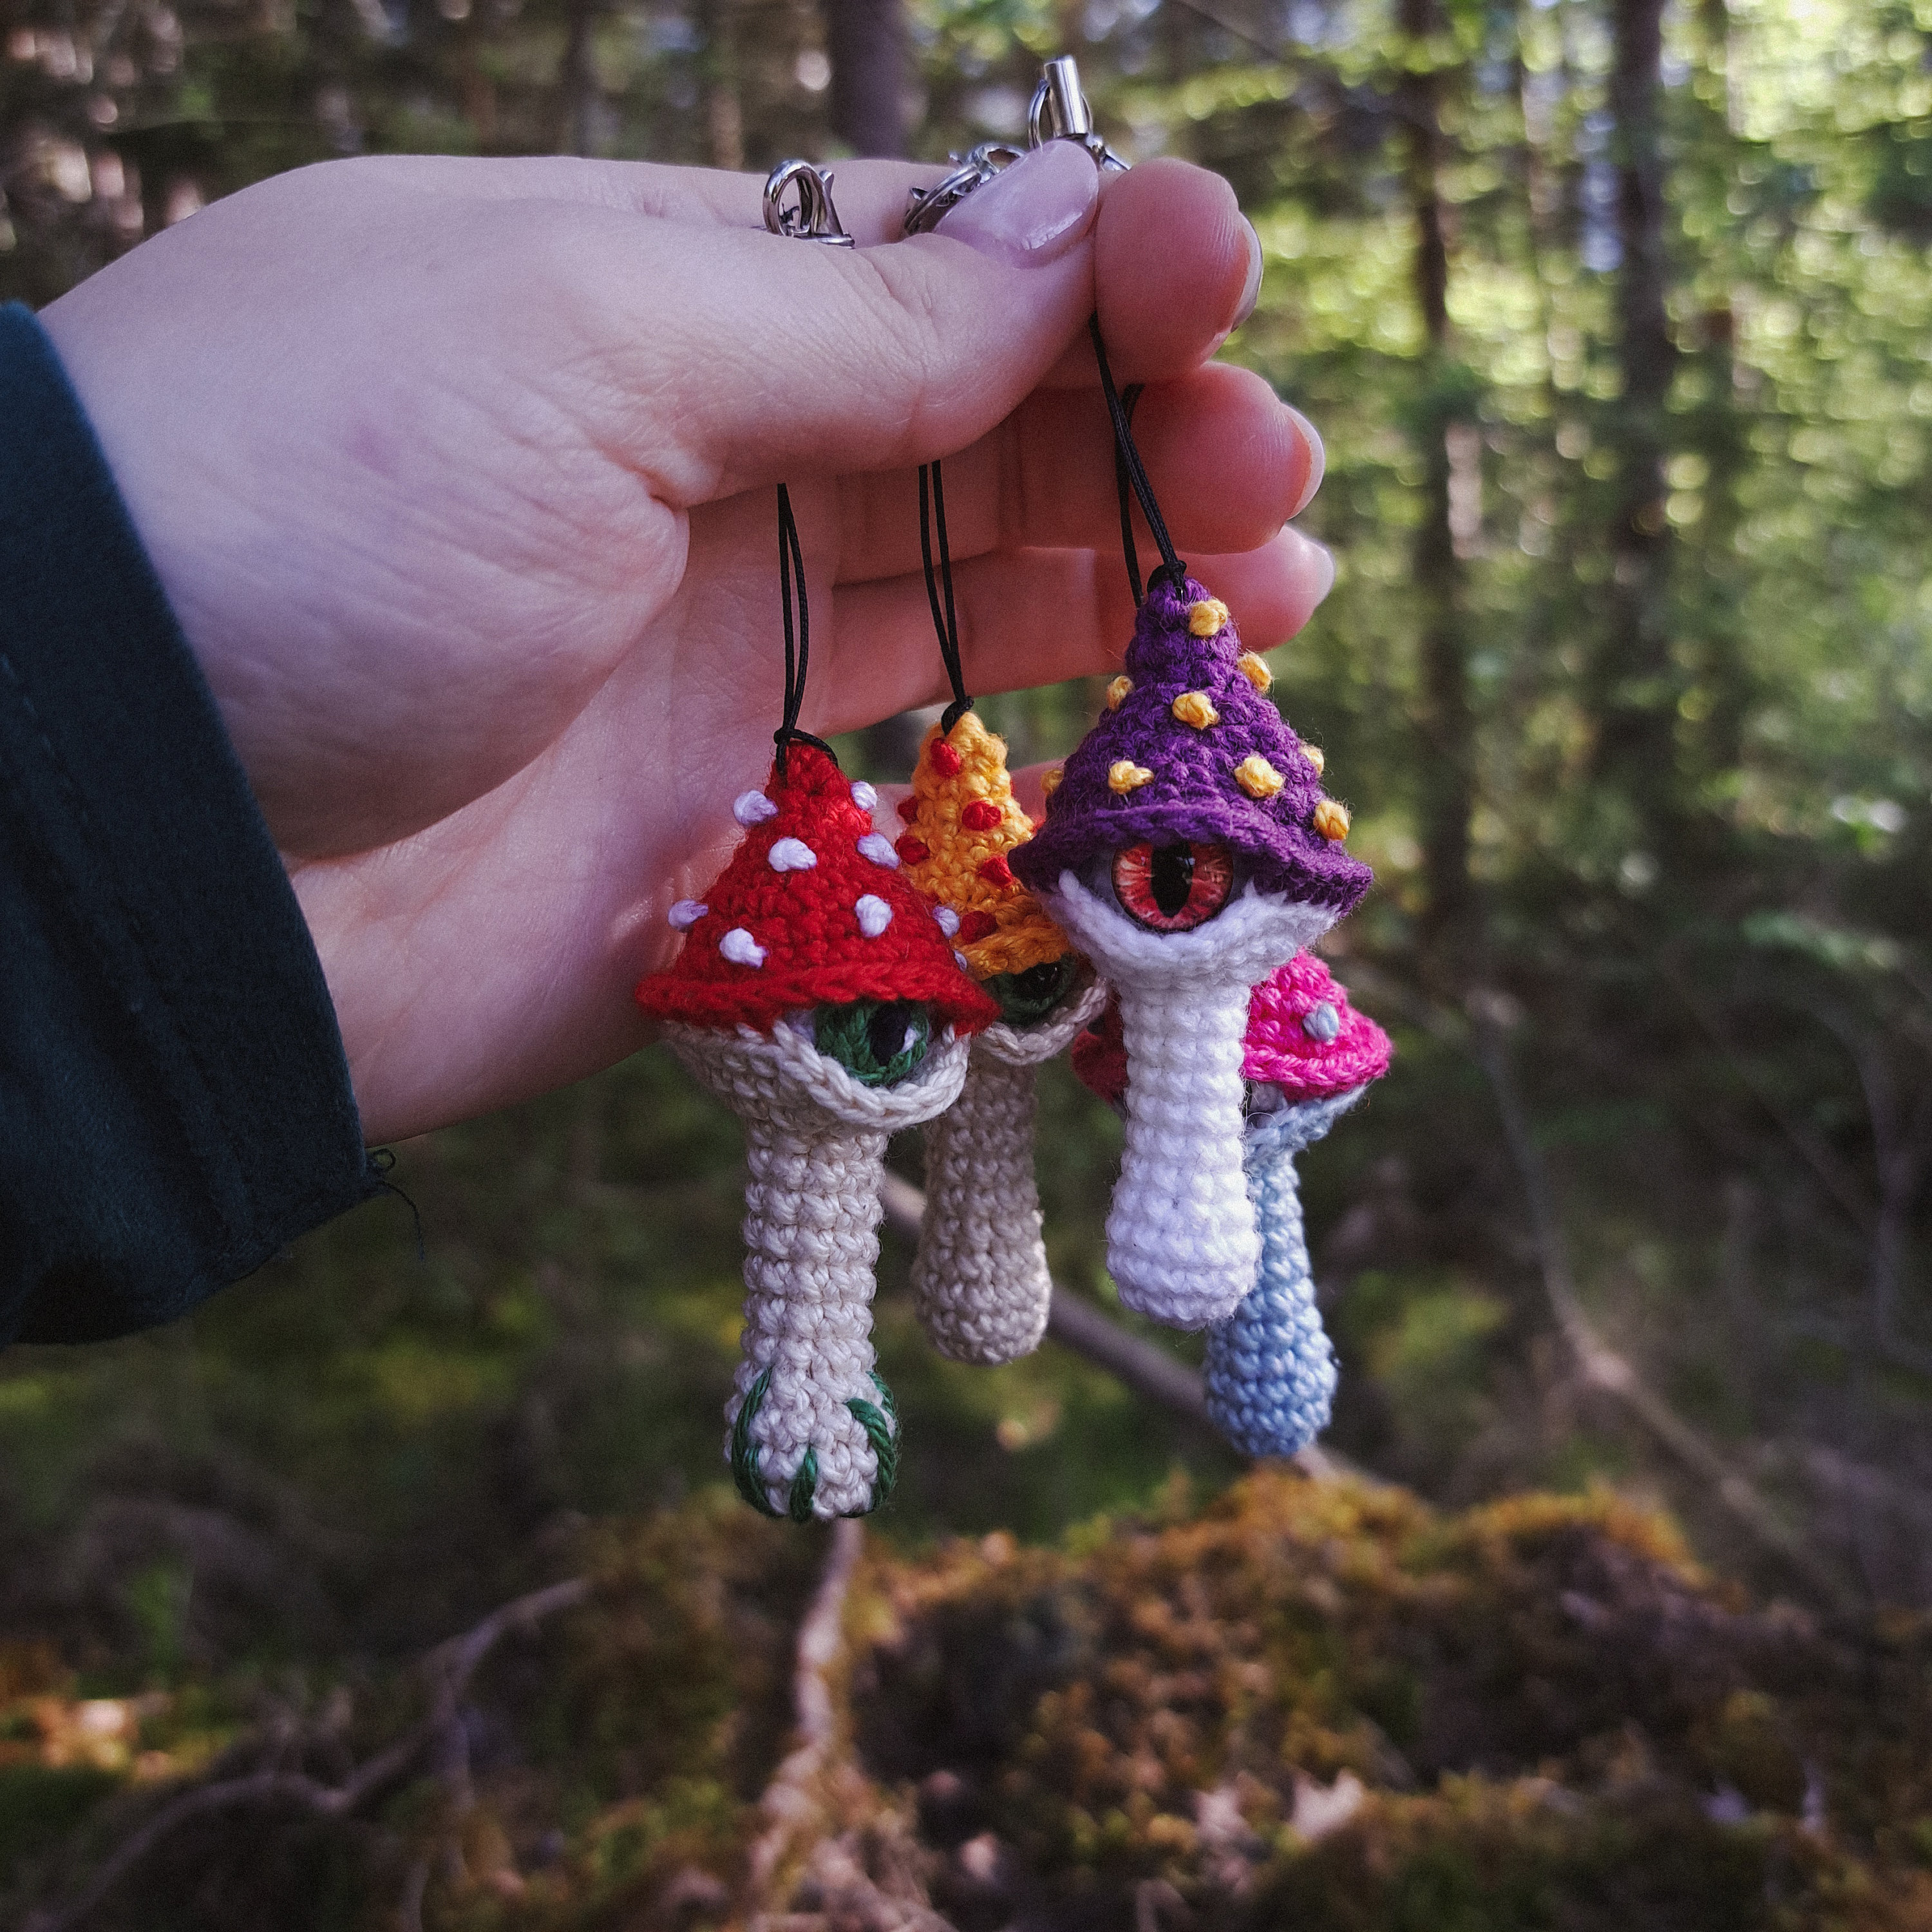 Mushroom Crochet Kit, Sustainable Gift for Crocheter, Ecofriendly